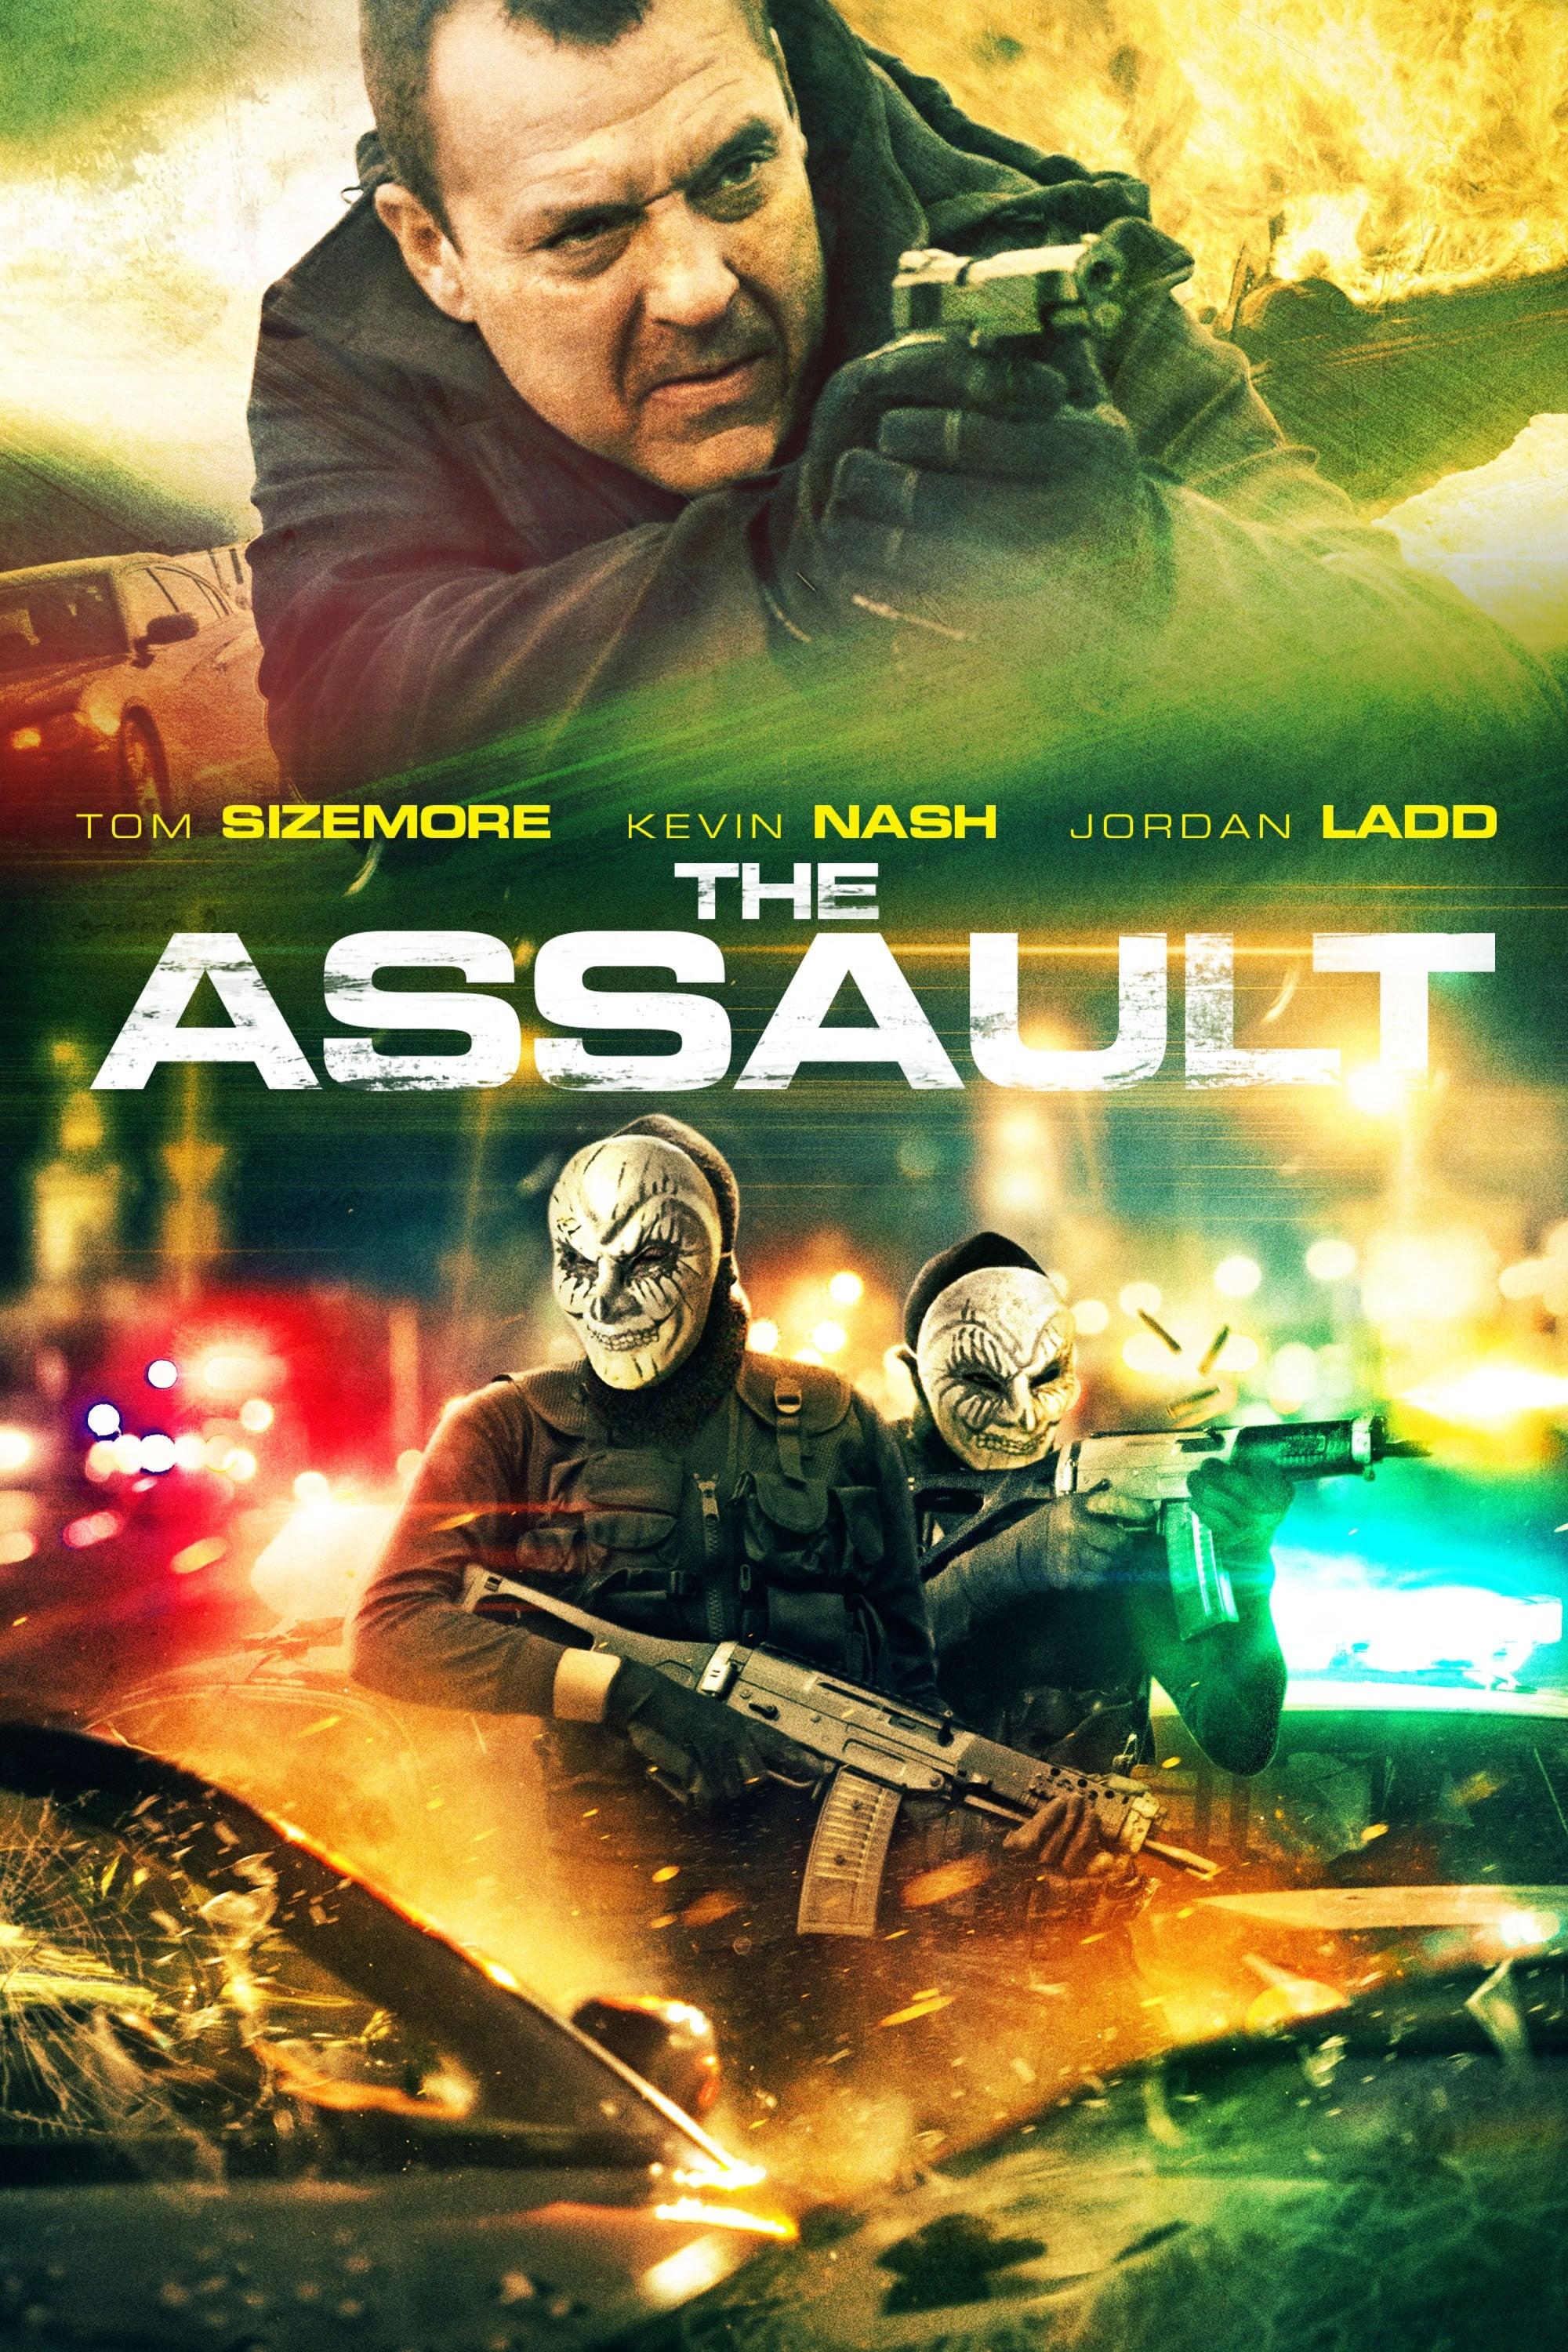 The Assault poster